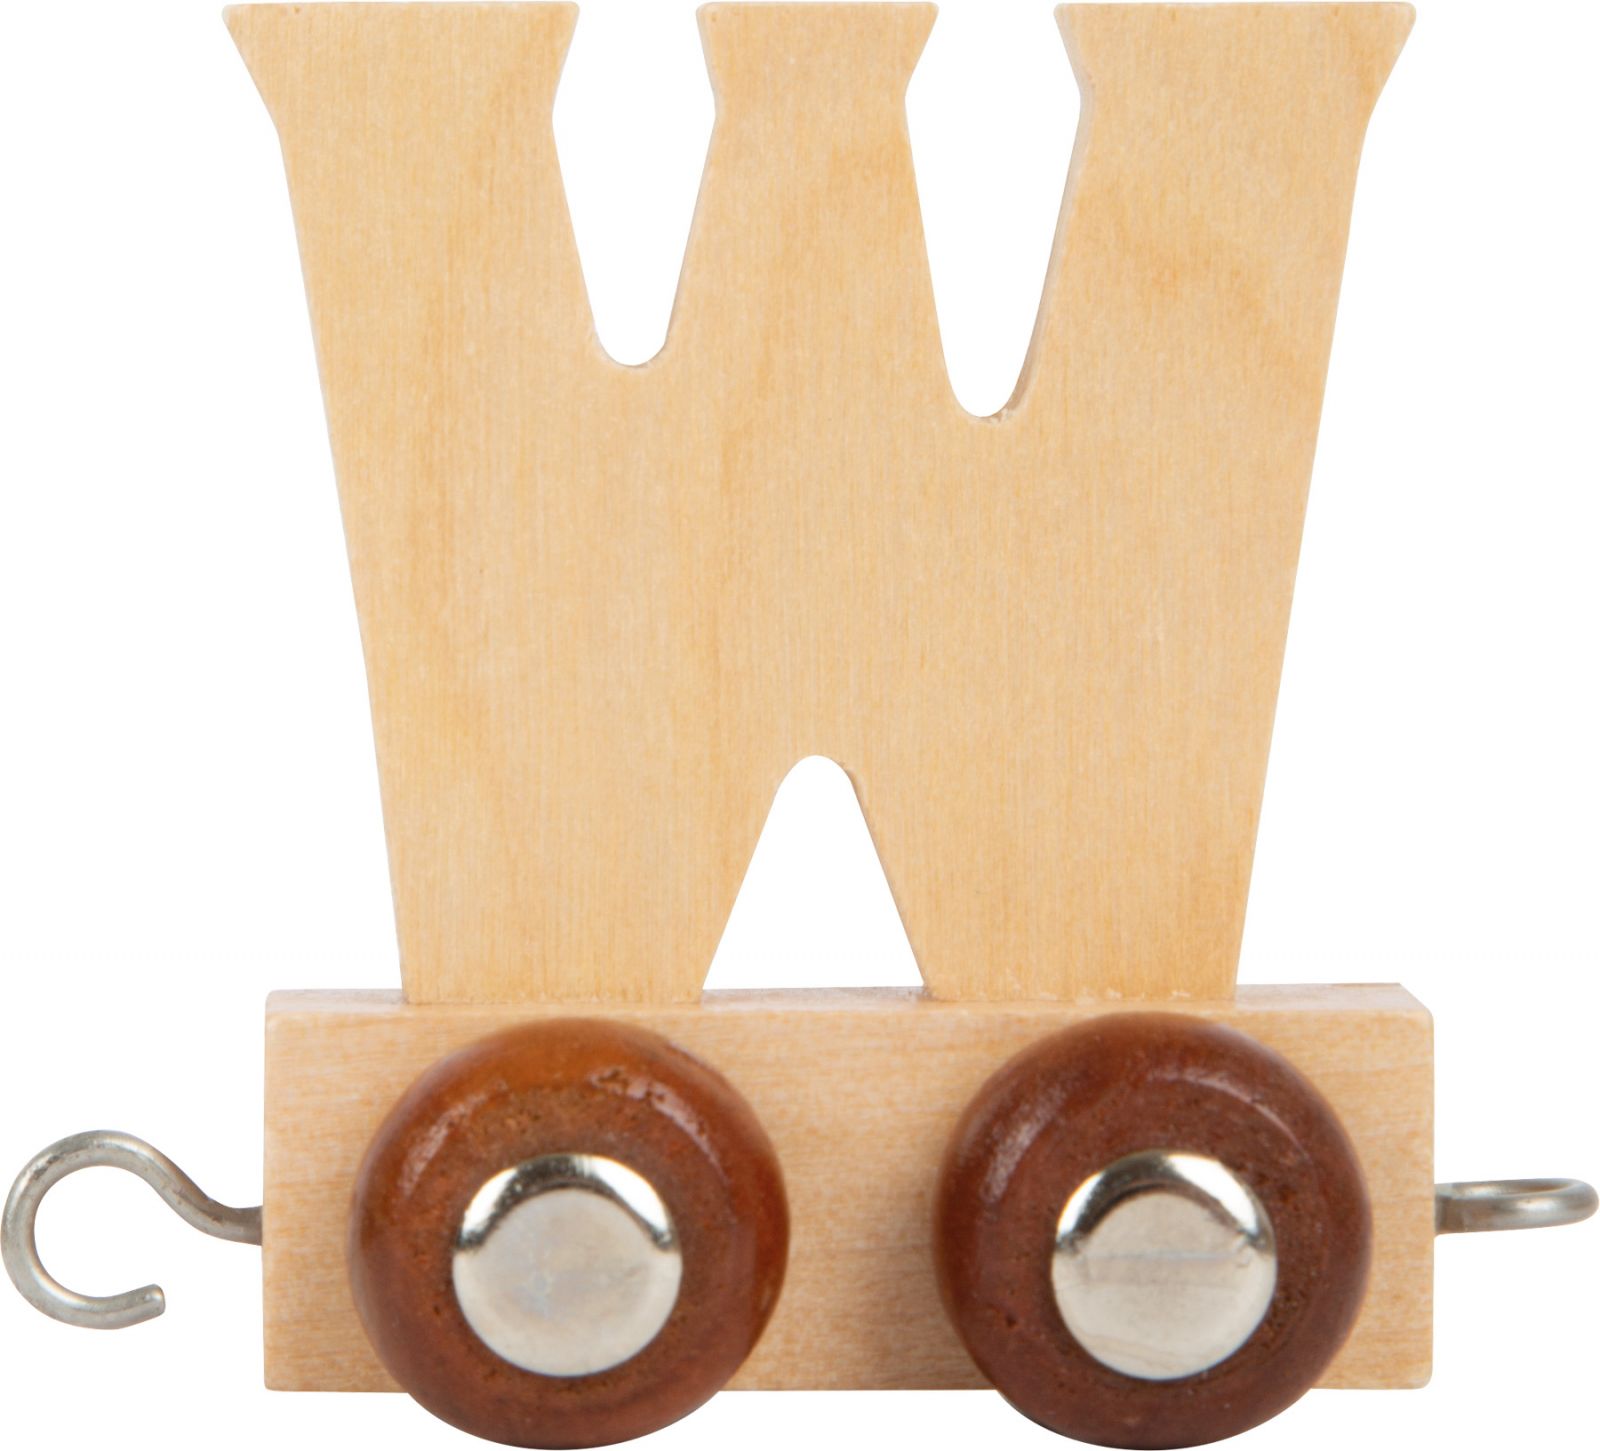 Dřevěné hračky small foot Dřevěný vláček vláčkodráhy abeceda písmeno W